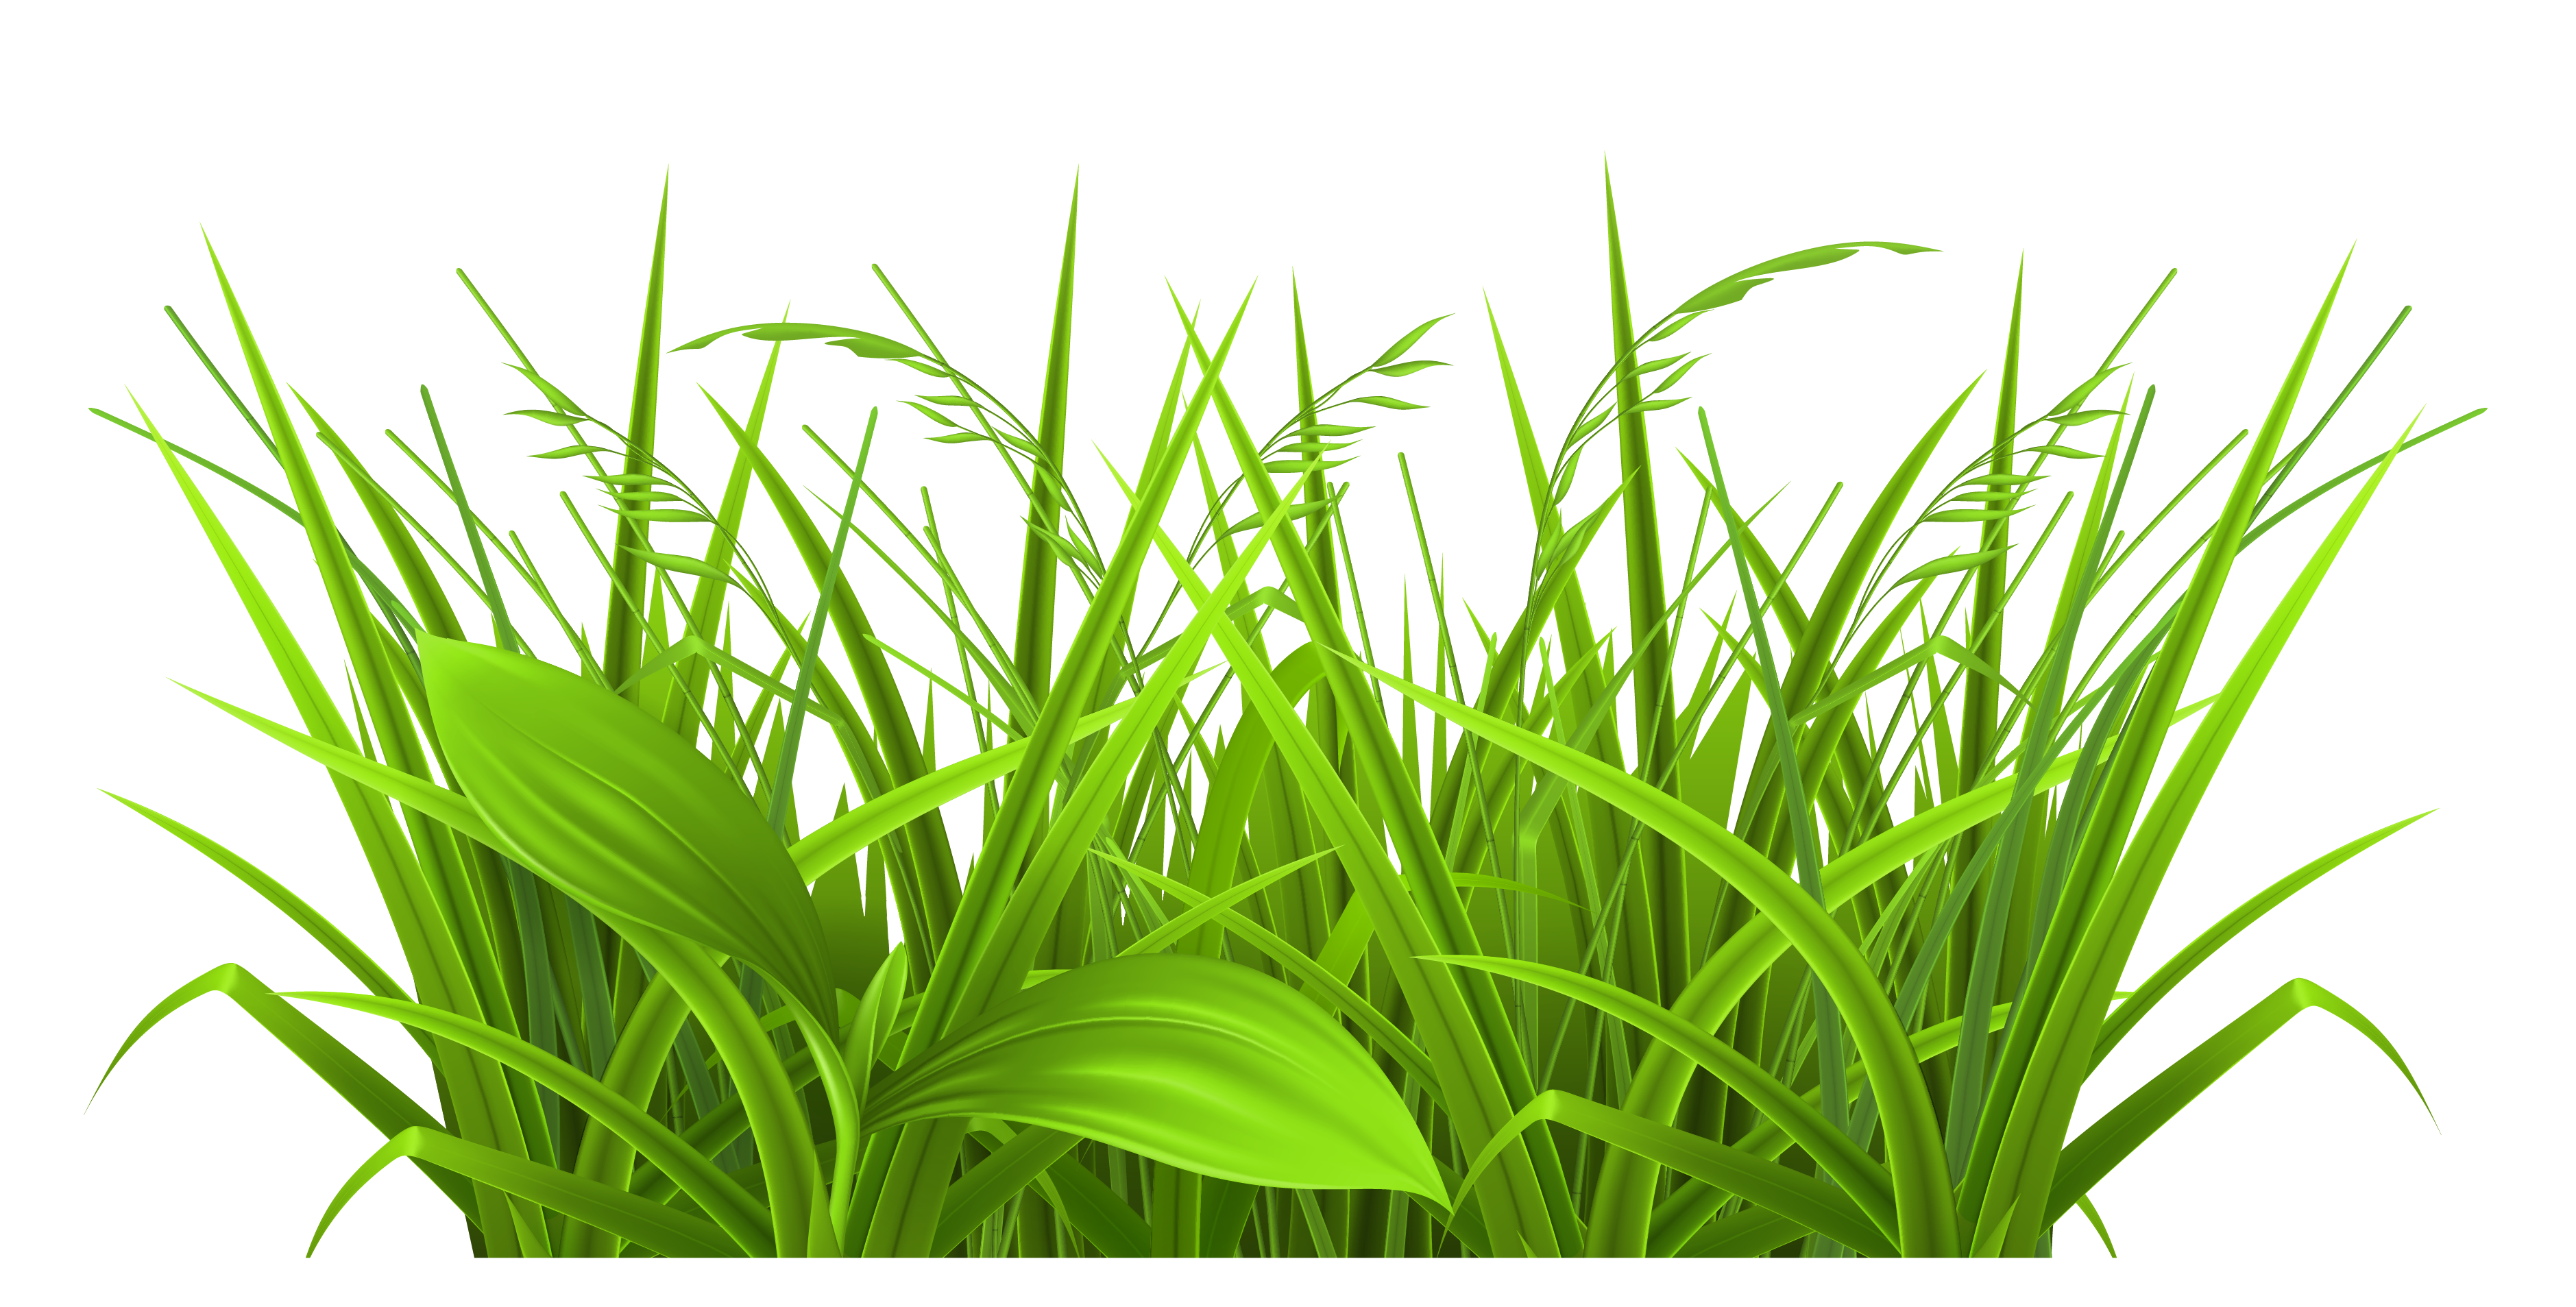 Prairie or field or wheat or grass clipart